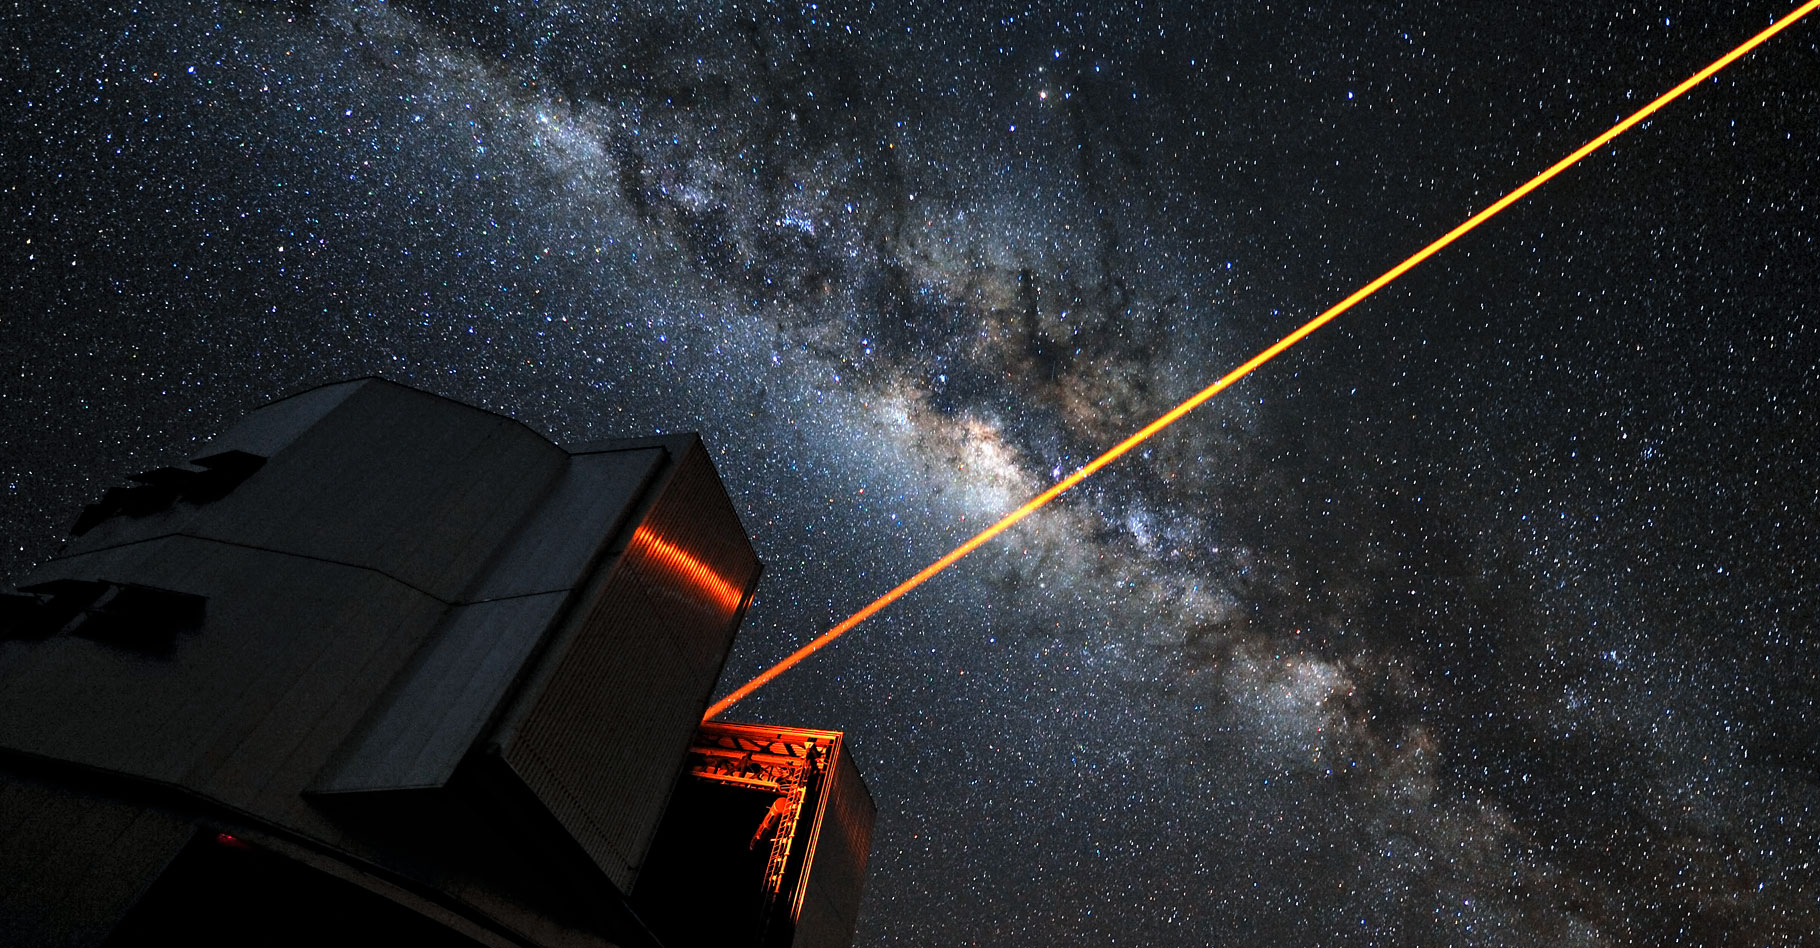 VLT Laser Guide Star.&nbsp;© ESO/G. Hüdepohl -&nbsp;CC BY 4.0
